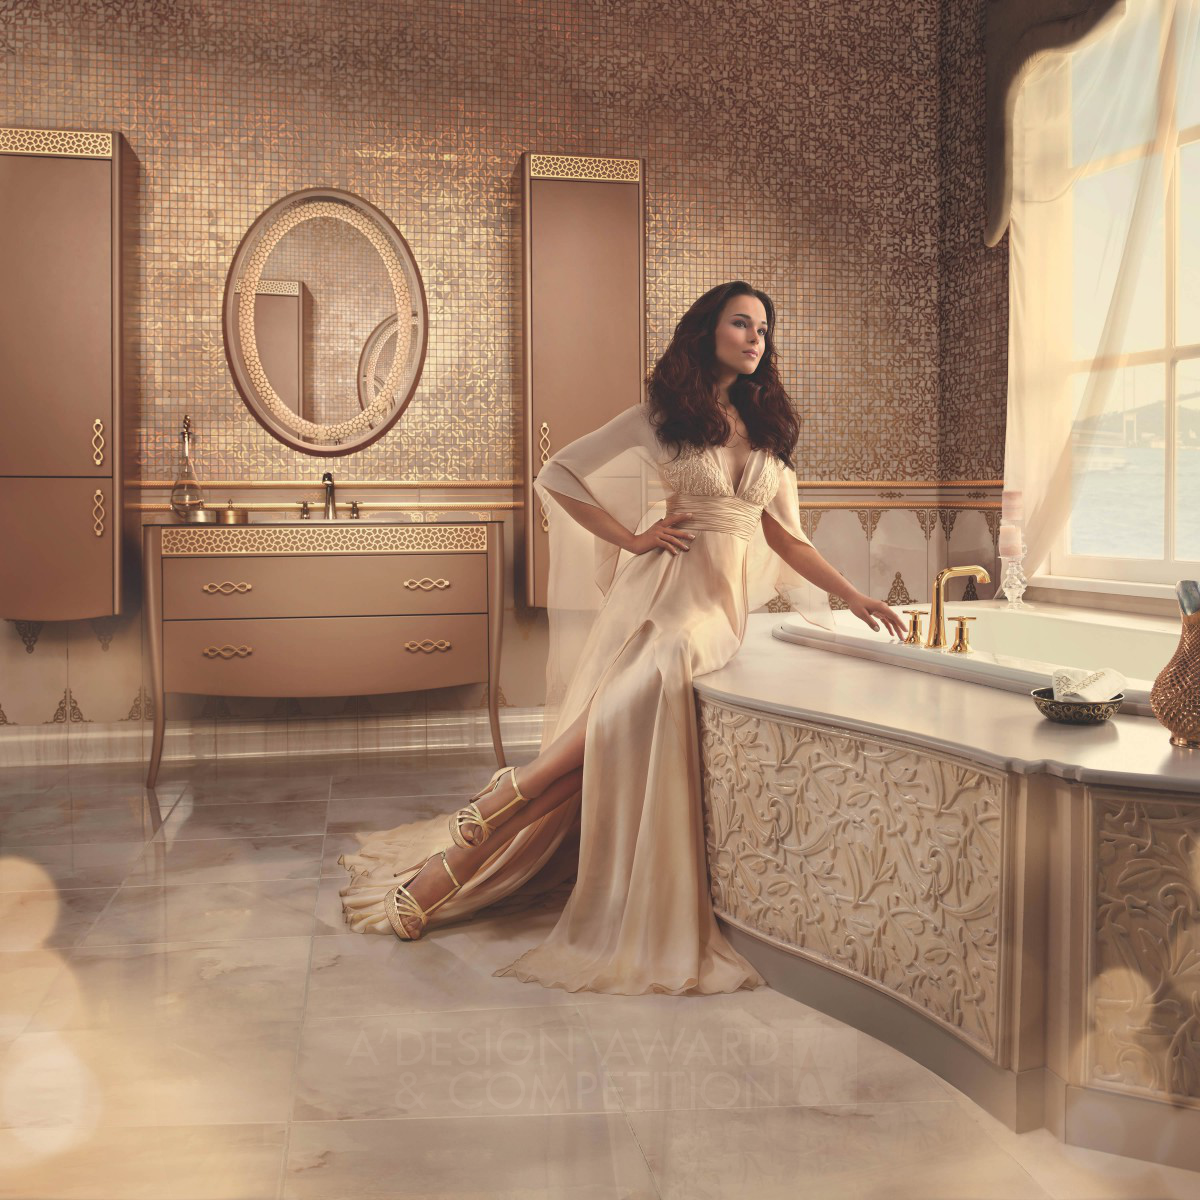 SARAYLI (OTTOMAN) Bathroom Furniture Set & Ceramic Tiling by K.i.d (Kale Design & Innovation)